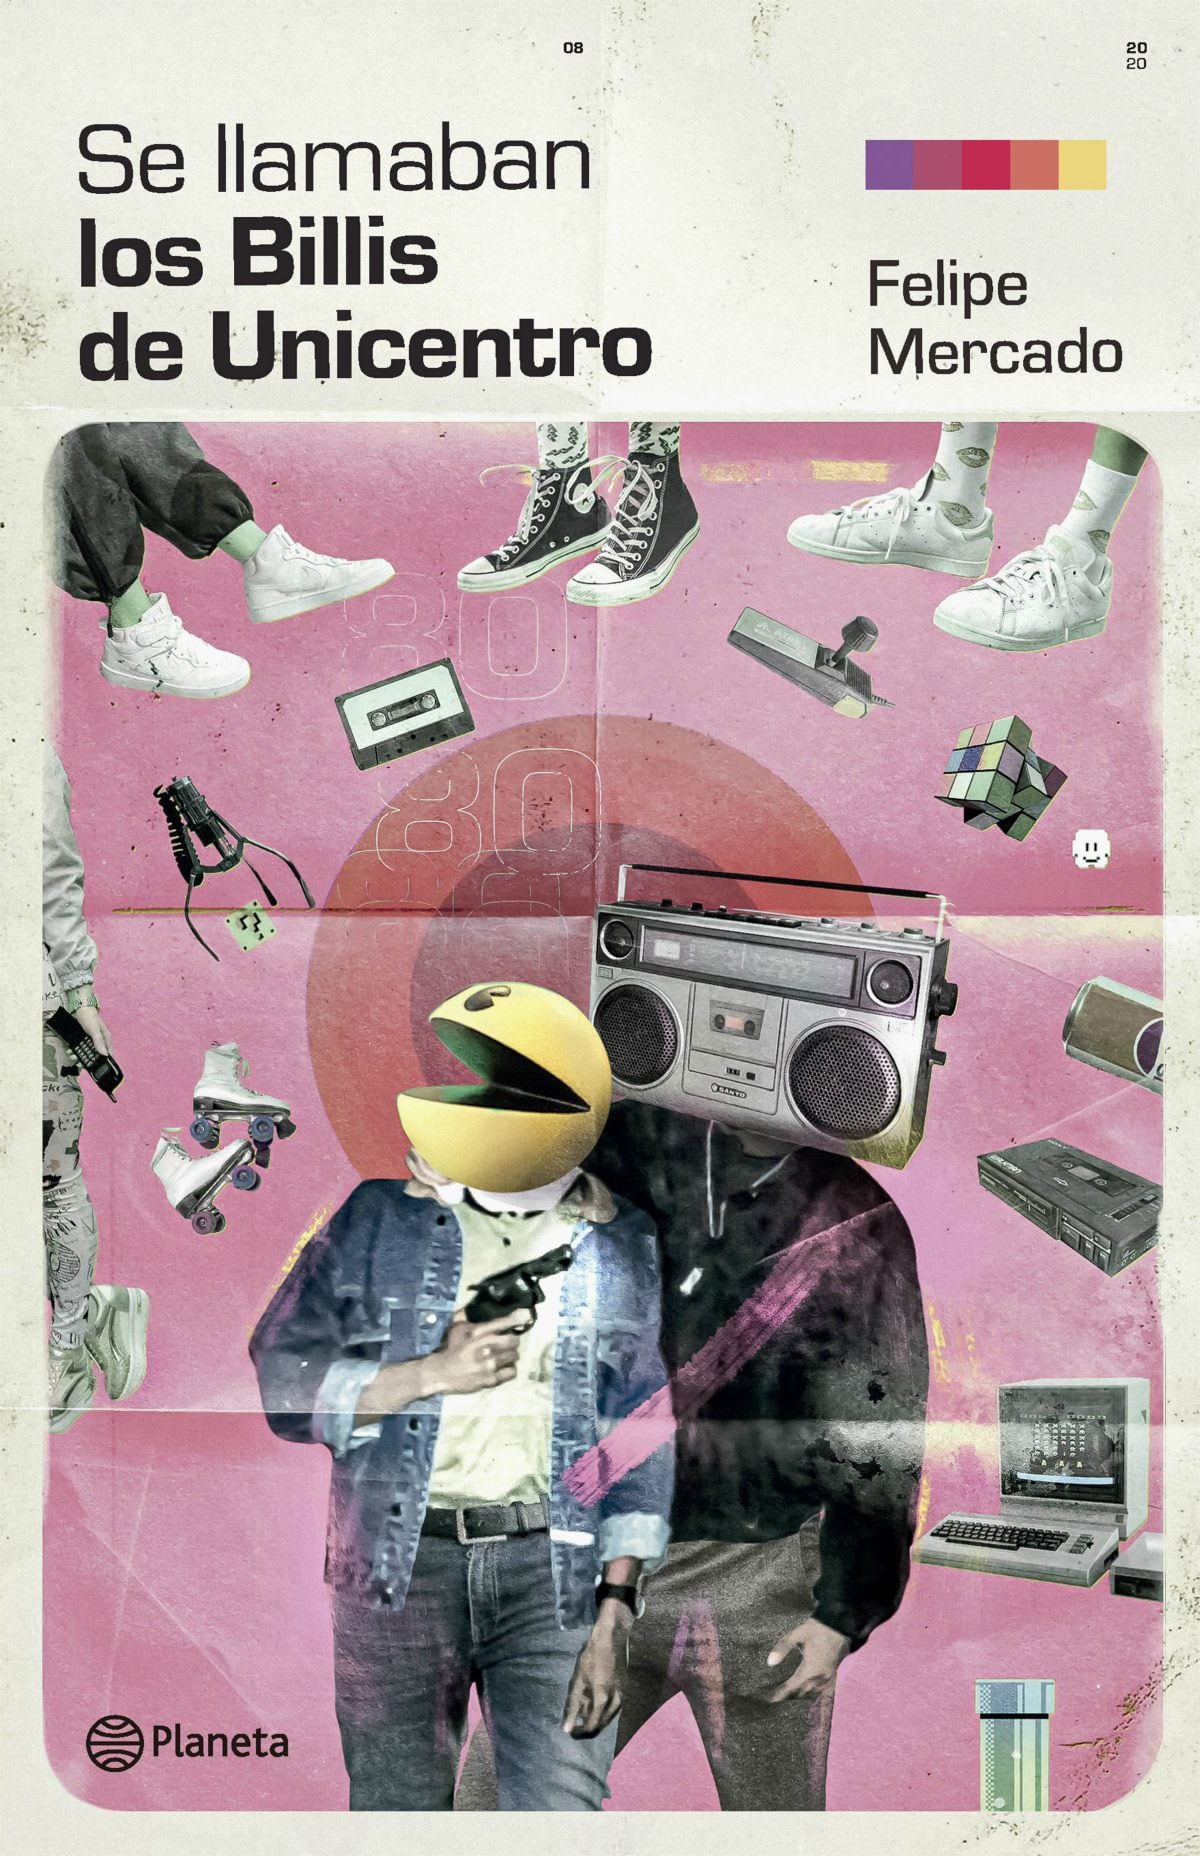 Detalle de la portada de "Se llamaban los Billis de Unicentro", de Felipe Mercado.